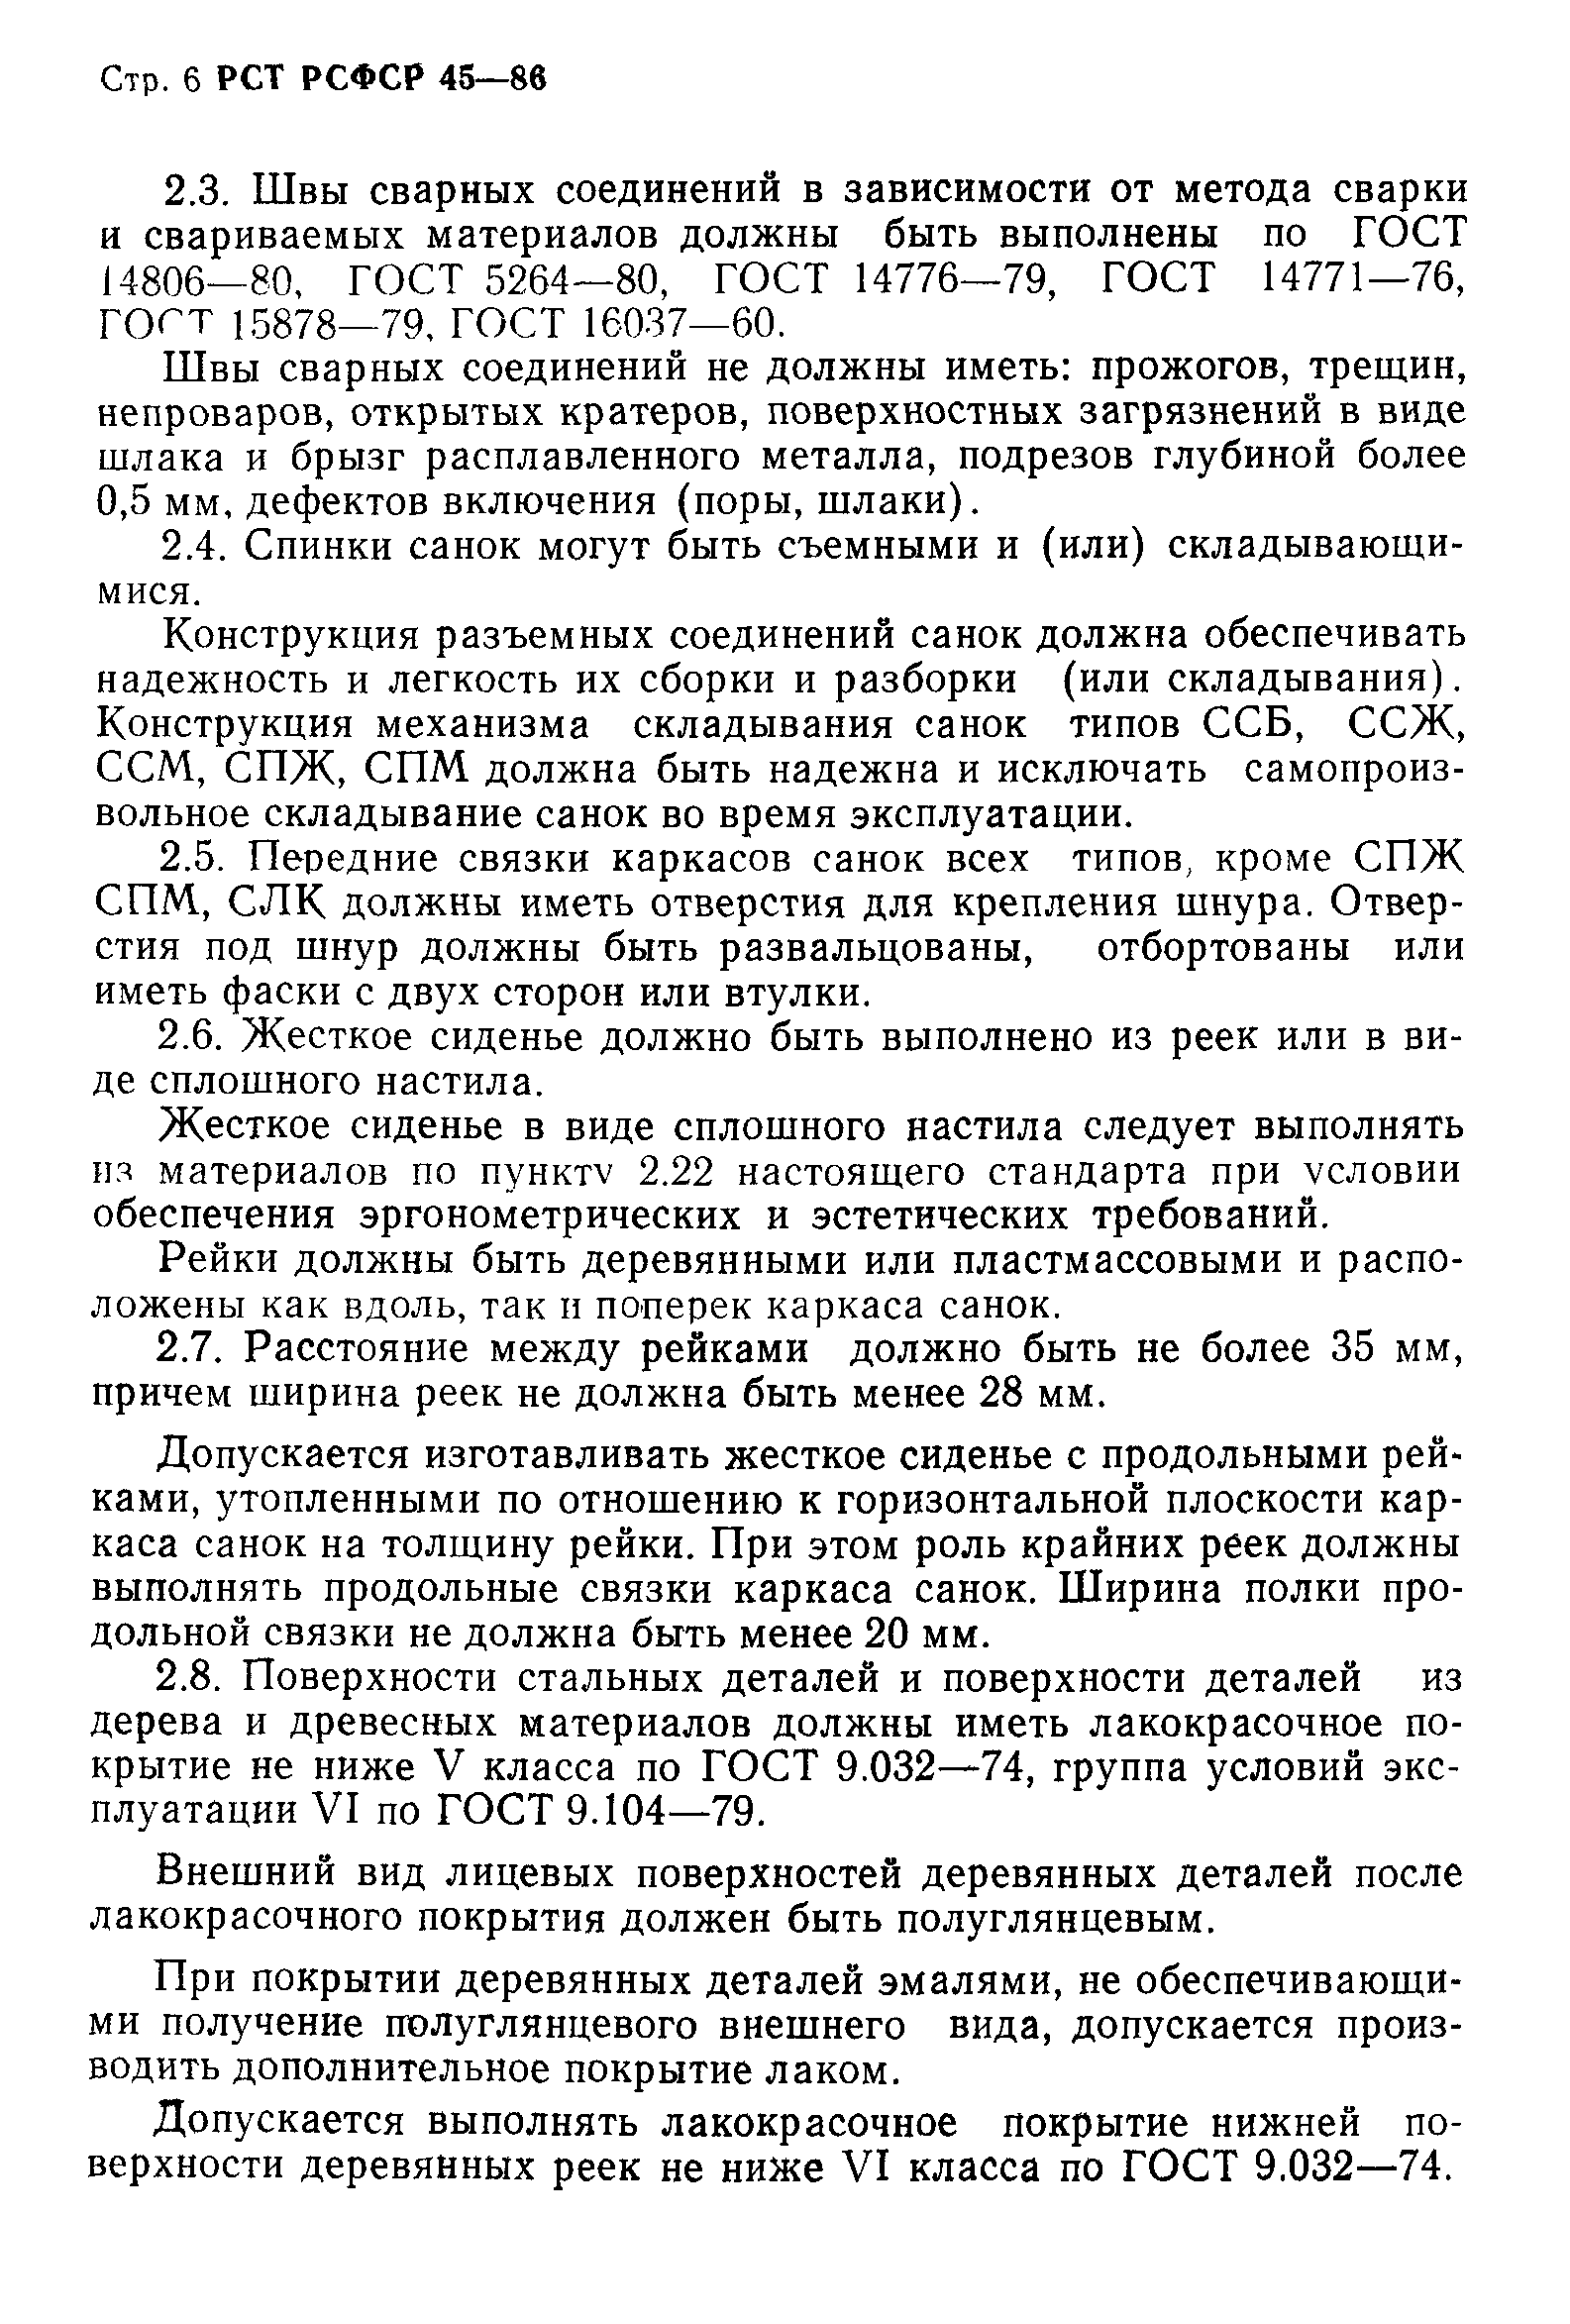 РСТ РСФСР 45-86